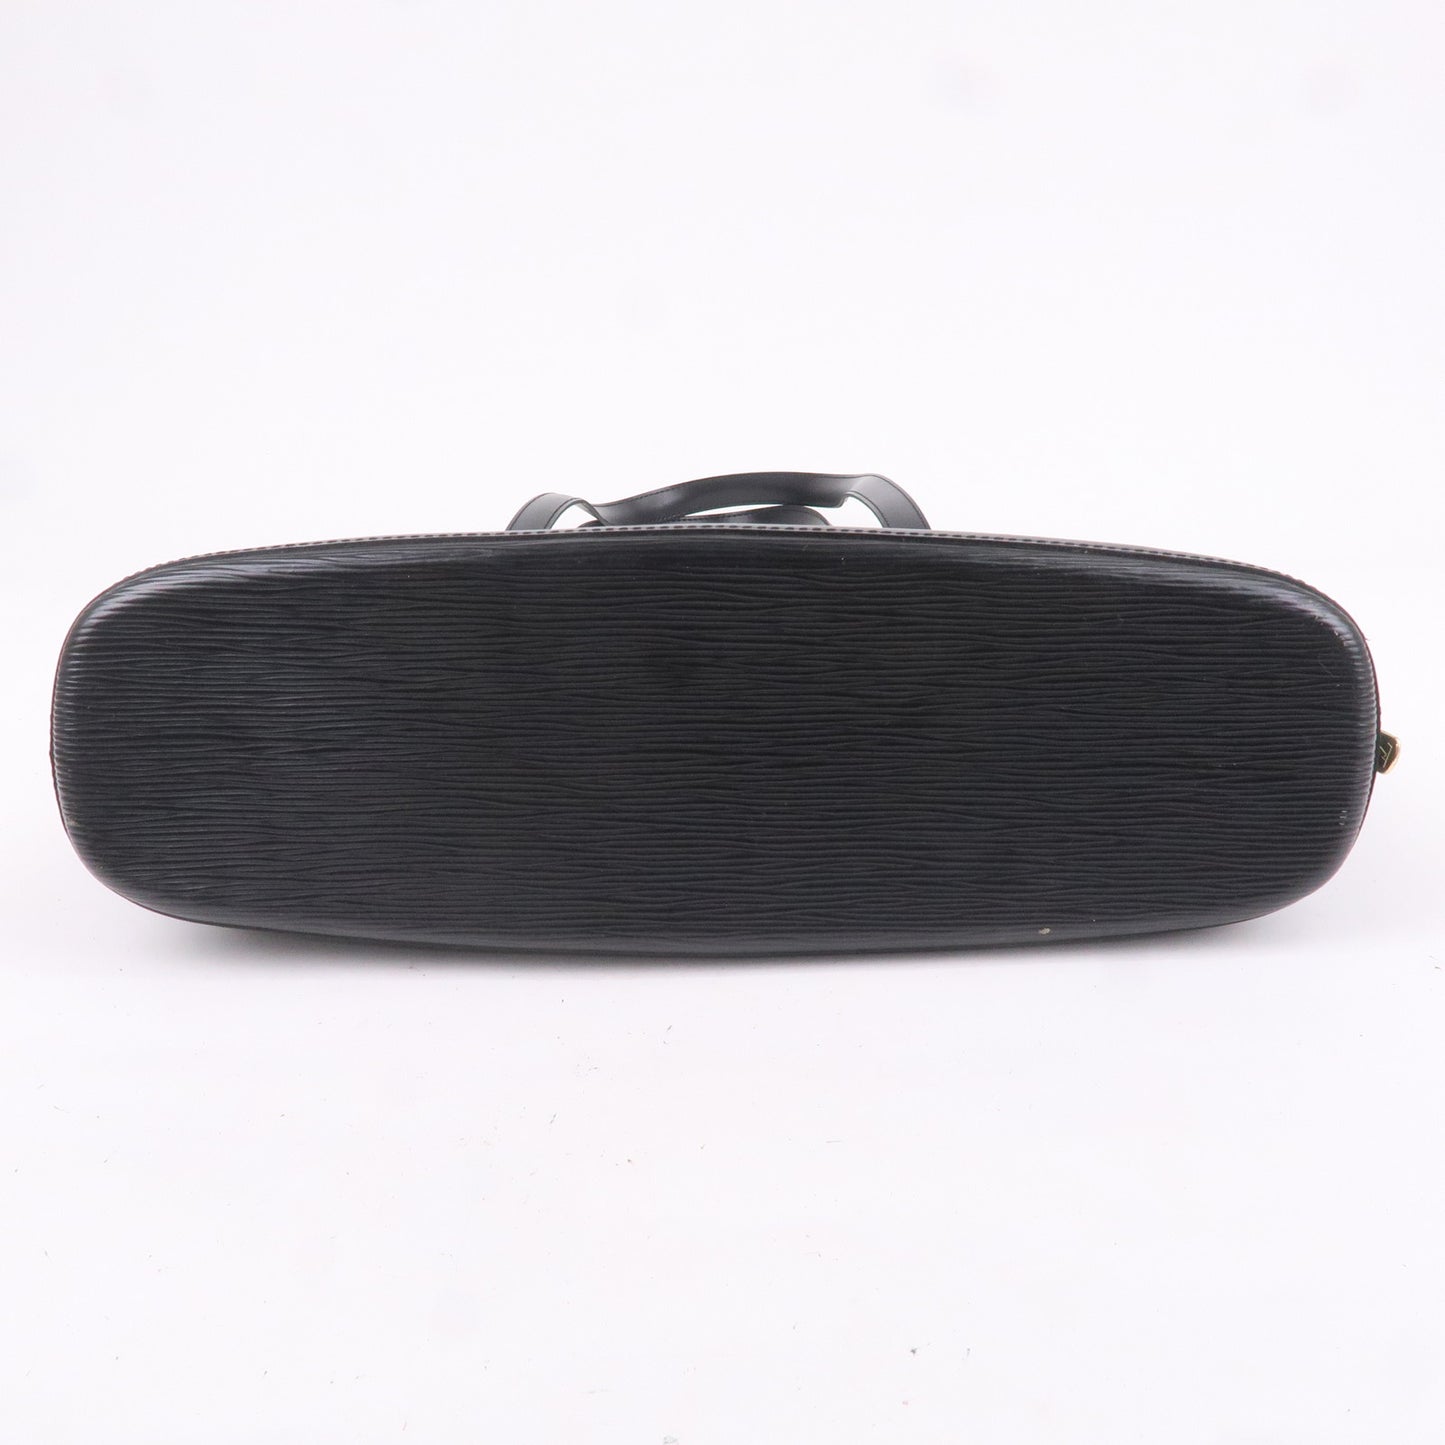 Louis Vuitton Epi Lussac Shoulder Bag Noir Black M52282